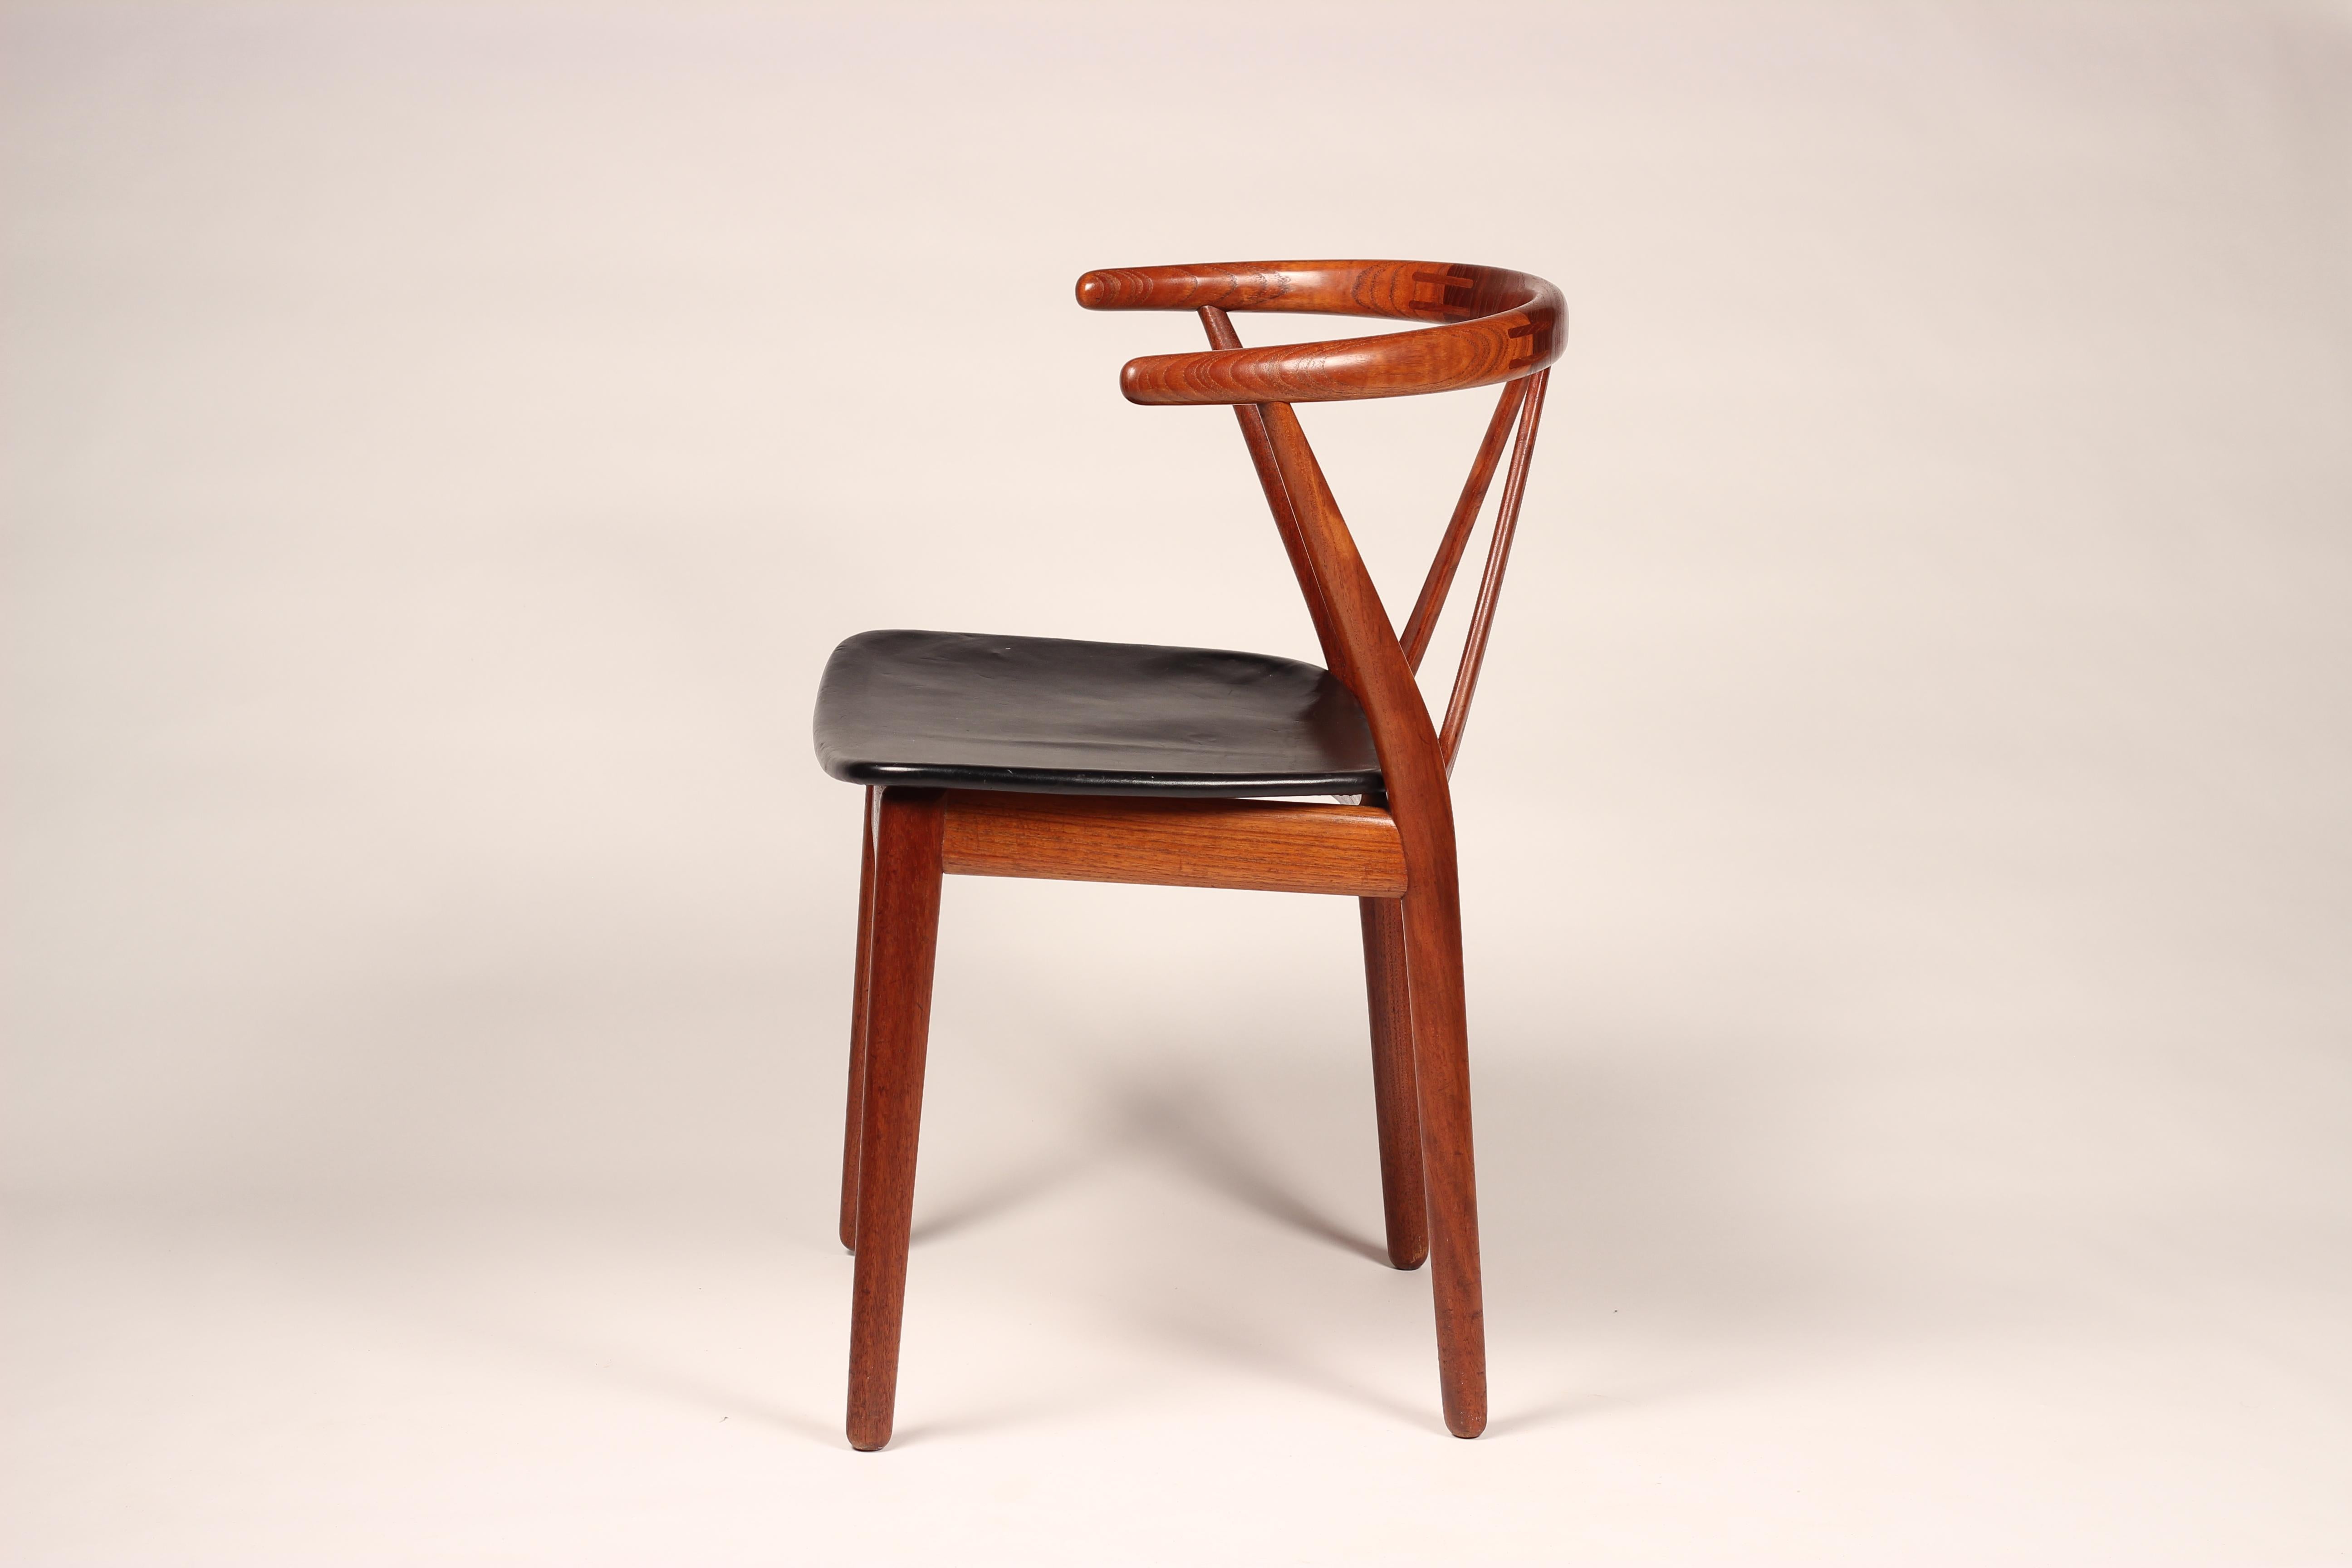 Ein Ess- oder Schreibtischstuhl, Modell 255, aus Teakholz und Leder von Henning Kjærnulf für Bruno Hansen, Dänemark, 1950er Jahre. Diese massiven Teakholzstühle haben eine schöne geschwungene Rückenlehne. Die diagonale Abstützung der Rückenlehne